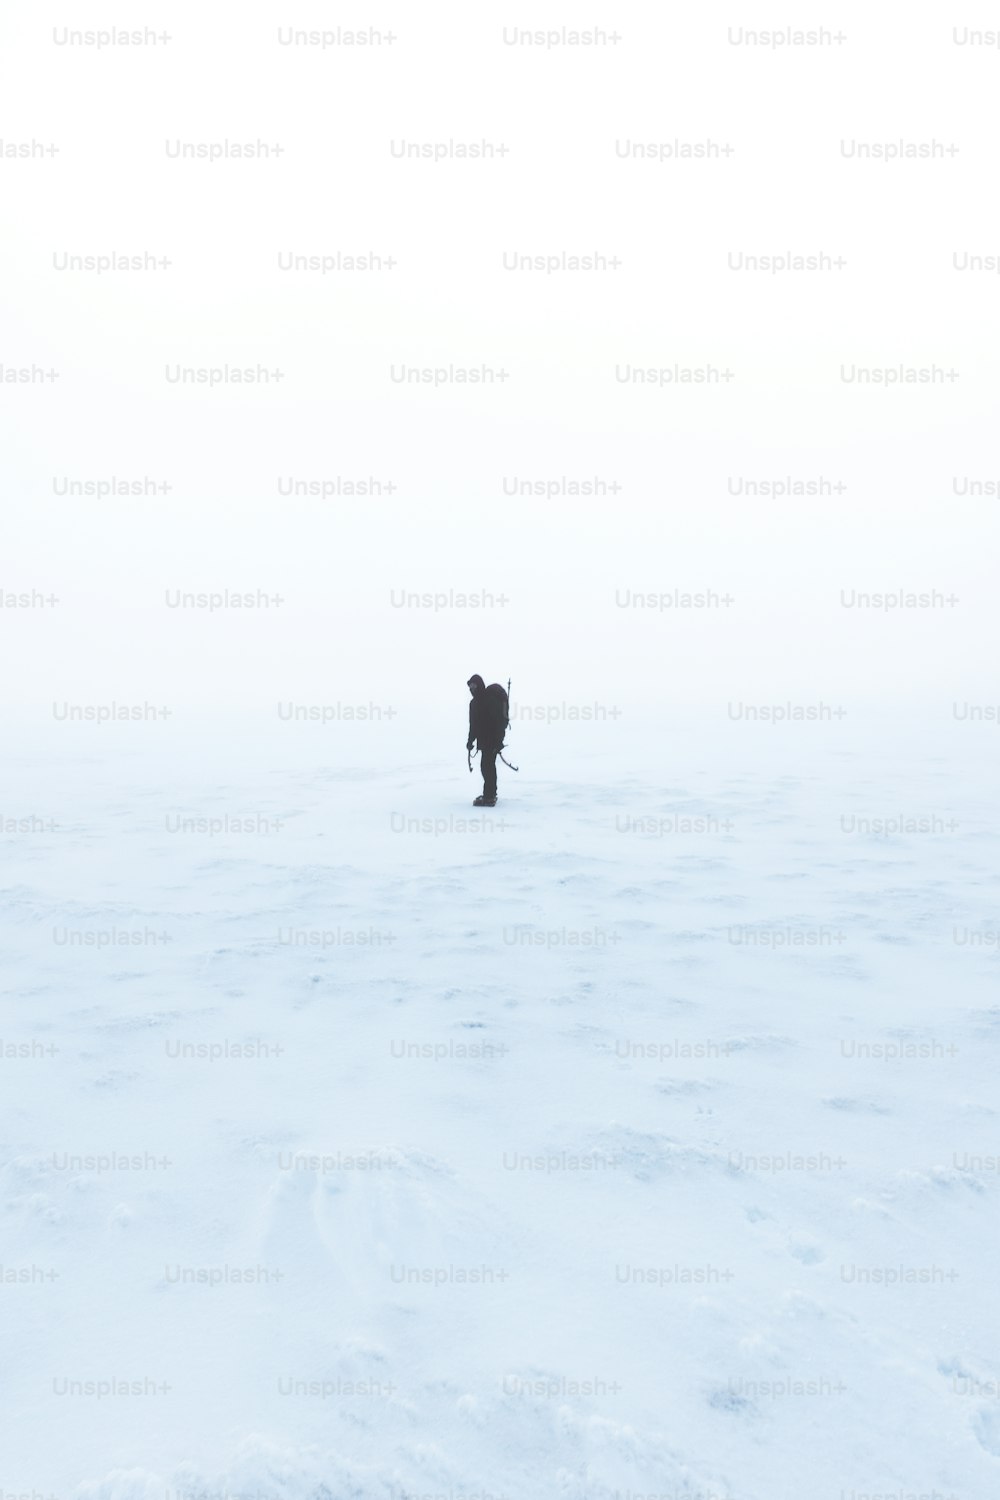 une personne marchant à travers un champ enneigé